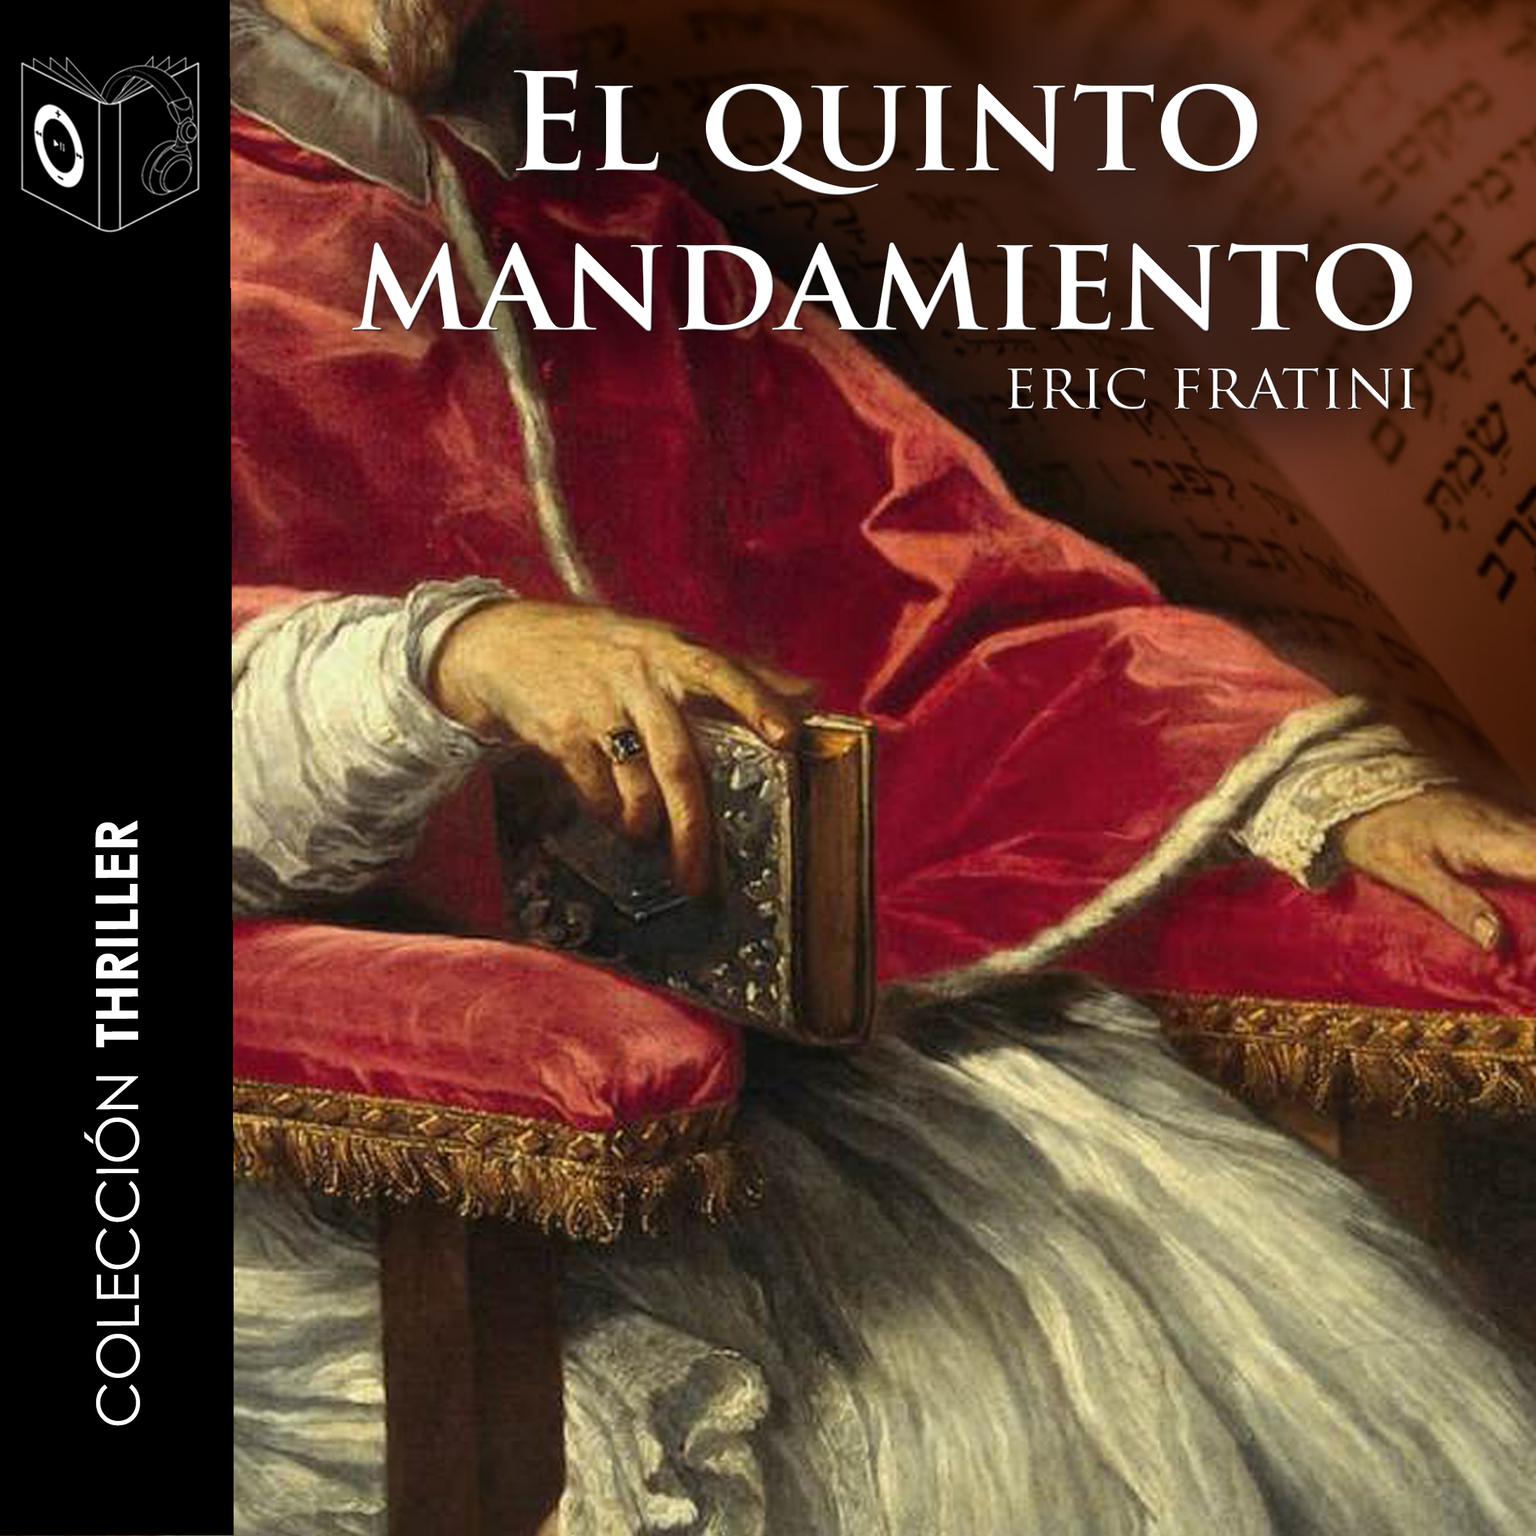 El quinto mandamiento Audiobook, by Eric Frattini